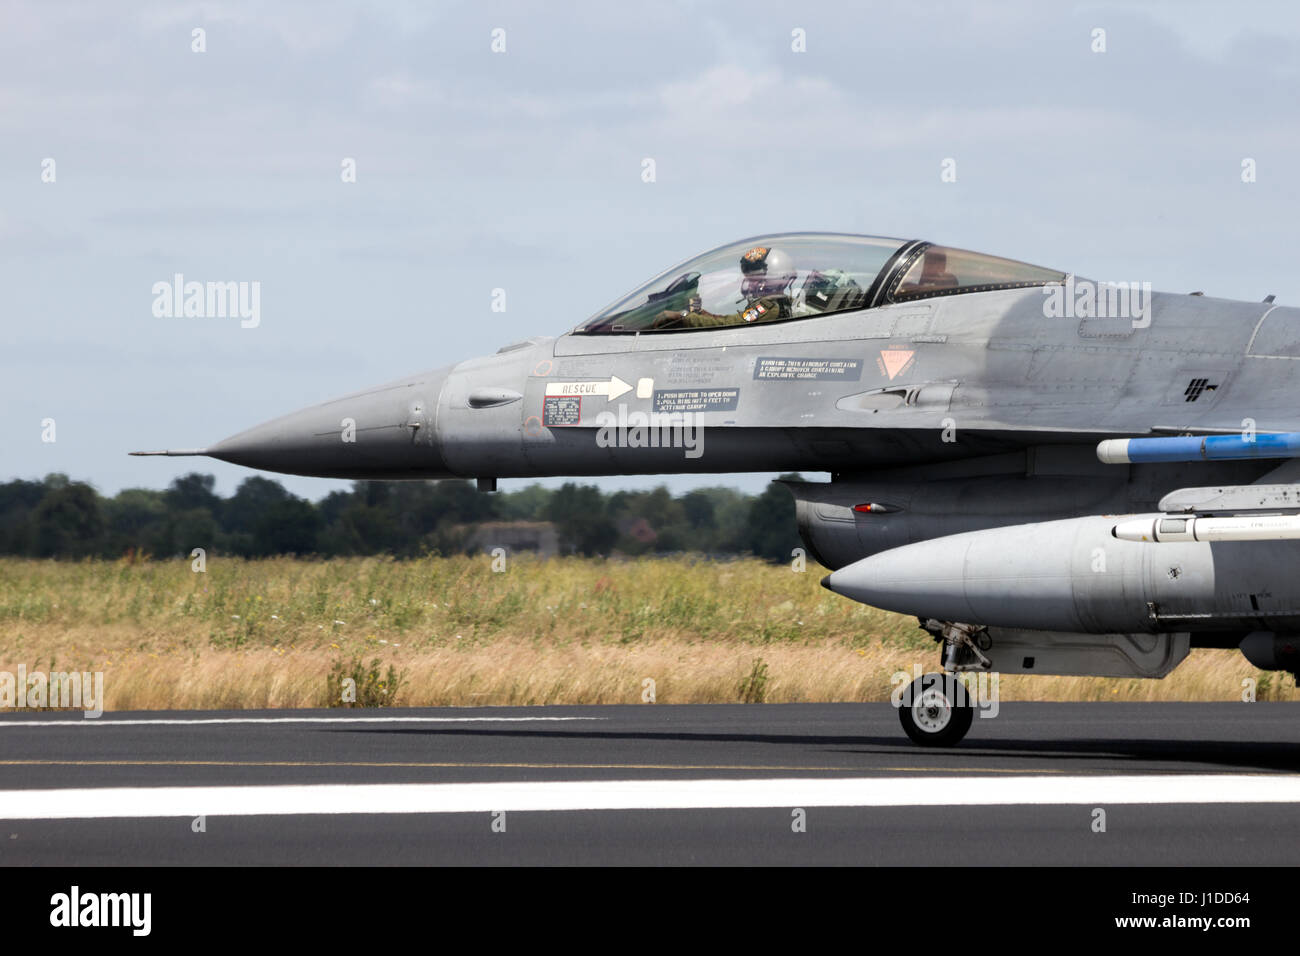 SCHLESWIG-JAGEL, Deutschland-23. Juni 2014: Lockheed Martin F-16 Kampfjet Flugzeug auf der Landebahn während dem NATO Tiger Meet bei Schleswig-Jagel Airbase. Stockfoto